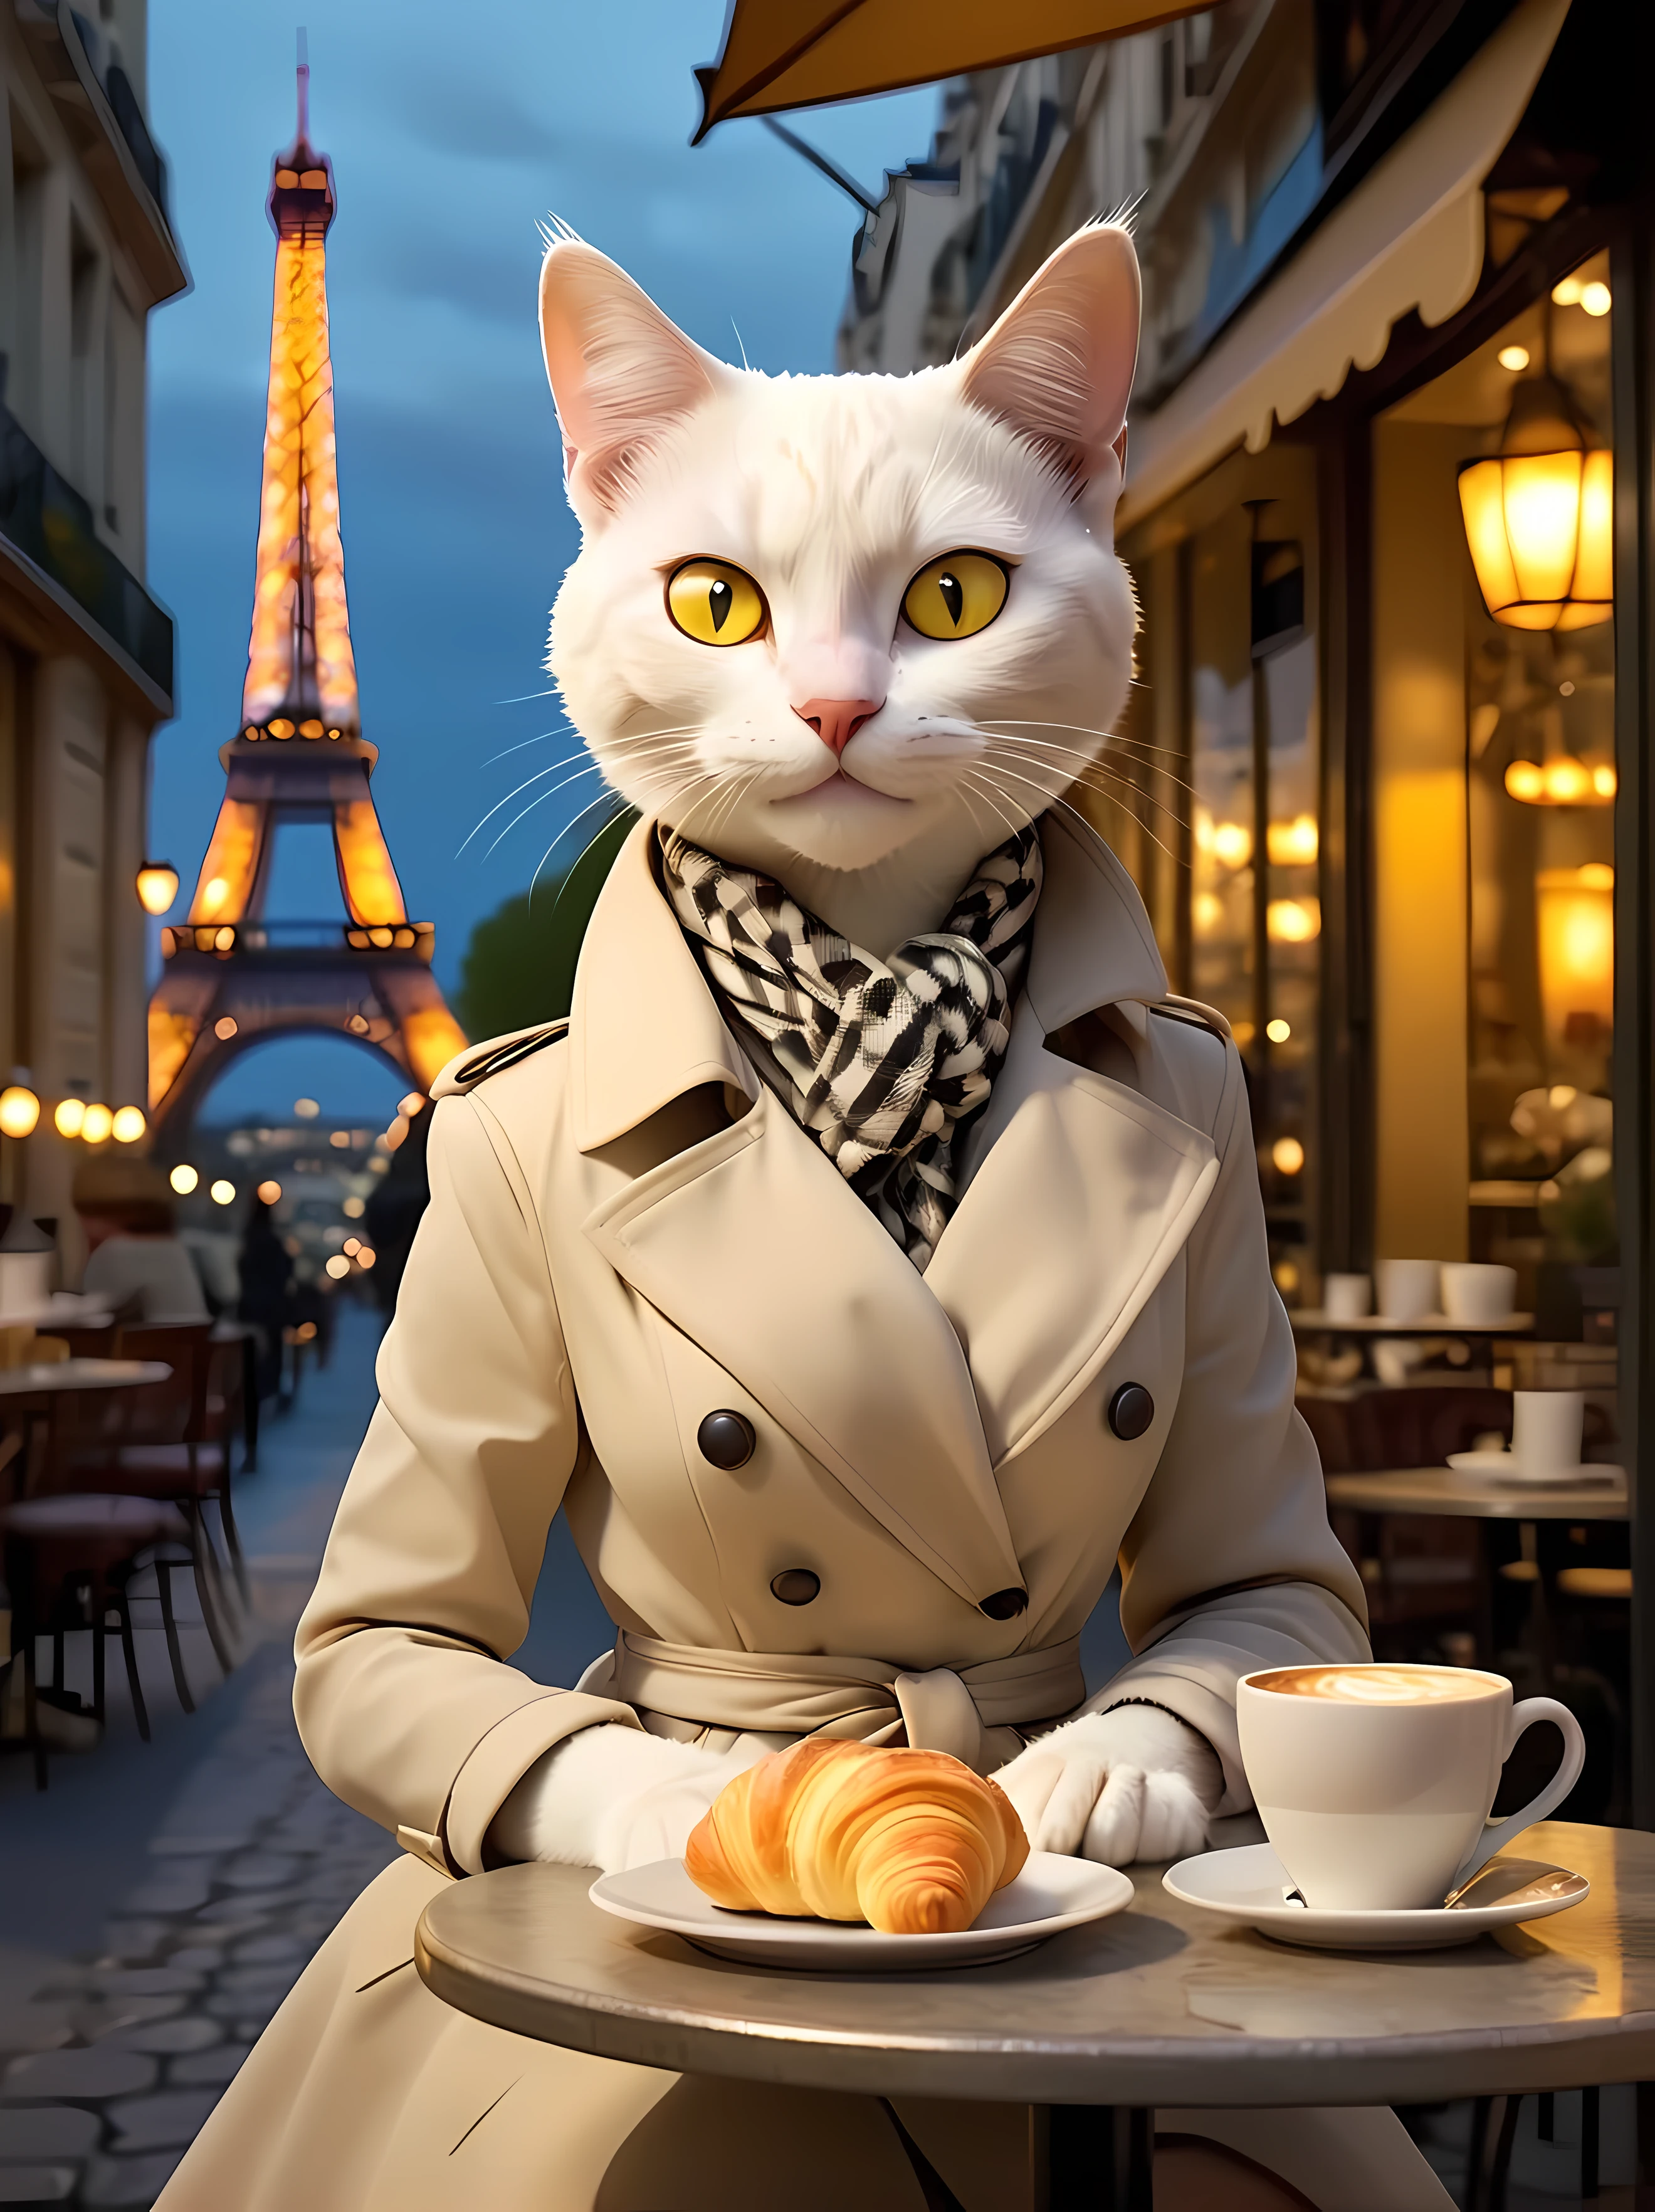 entwerfen Sie ein fesselndes Bild einer charmanten ((anthropomorph)) weiße Katze elegant an einem kleinen Bistrotisch sitzend mit einem Arrangement aus Croissants und einer dampfenden Tasse starken Kaffees in der Nacht, trägt ein (modisch) schickes Pariser Outfit, ein stylischer knielanger Trenchcoat mit dezentem Hahnentrittmuster, Ein Seidenschaal, gemütliches Café-Ambiente, strahlt eine warme und einladende Atmosphäre aus, romantische Pariser Atmosphäre, sanfte Ambientebeleuchtung. | Die Silhouette des Eiffelturms in der Ferne. | Leuchtend gelbe Augen, funkelnd, ((lächelt den Betrachter direkt an)), ((Epos)). | ((Mehr_Detail))
